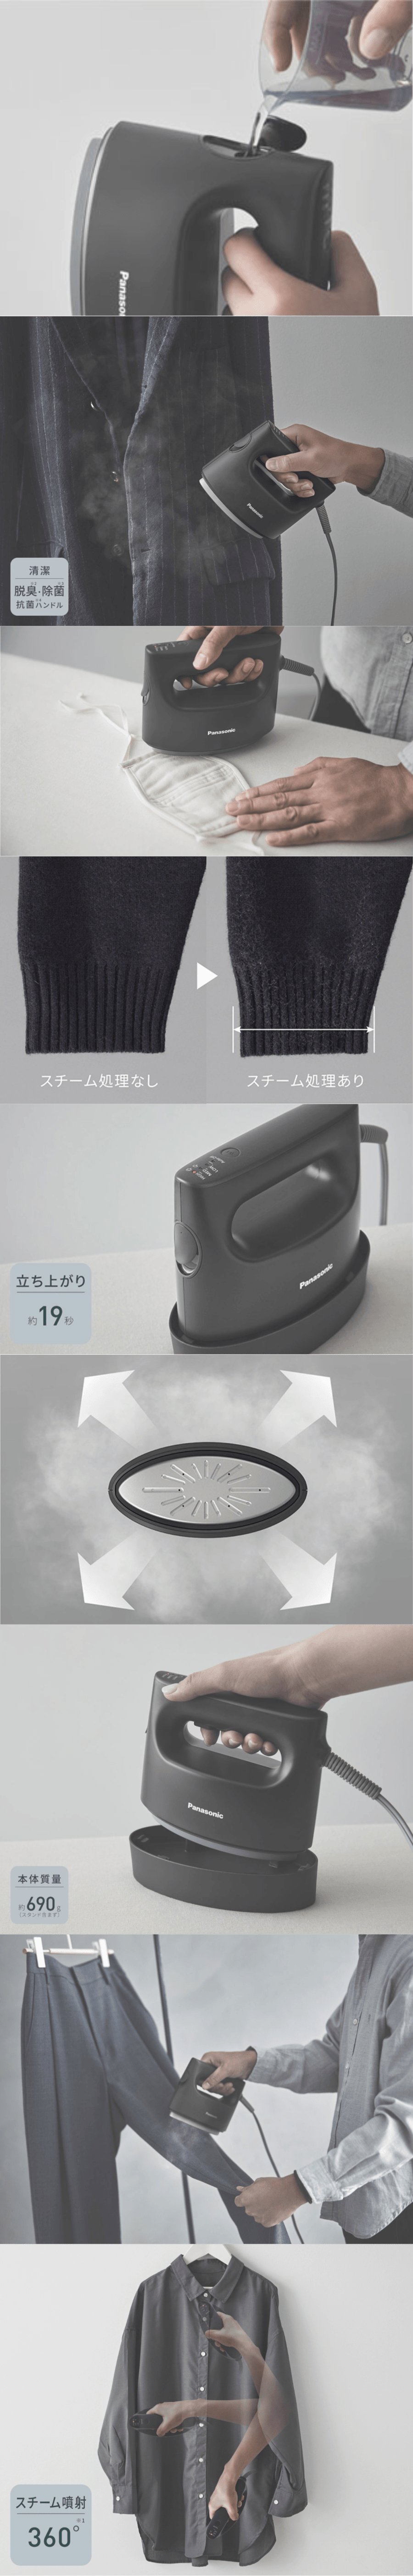 【新品】日本100V电器 日版松下蒸汽挂烫机NI-FS790-C 黑色 【加拿大直邮】